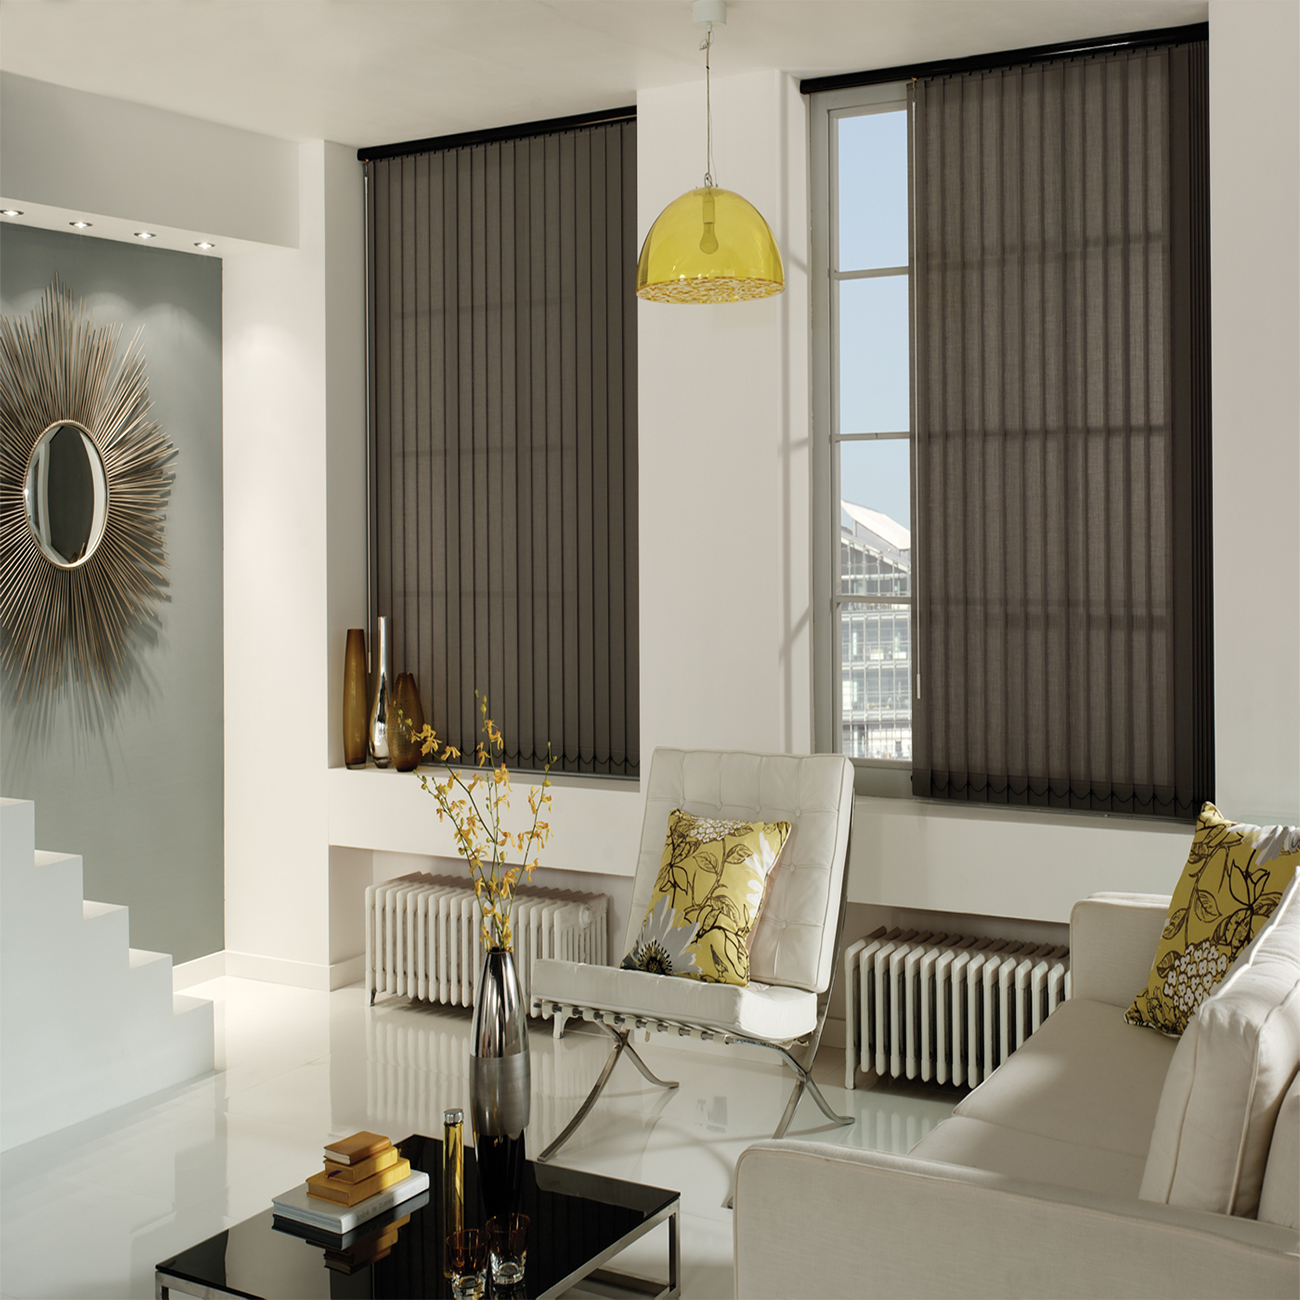 Rèm cuốn lá dọc - Với thiết kế mới nhất của rèm cuốn lá dọc, bạn có thể linh hoạt điều chỉnh ánh sáng và bảo vệ sự riêng tư cho căn phòng của mình. Hãy xem qua hình ảnh và cùng trải nghiệm sự thuận tiện và độc đáo của sản phẩm.